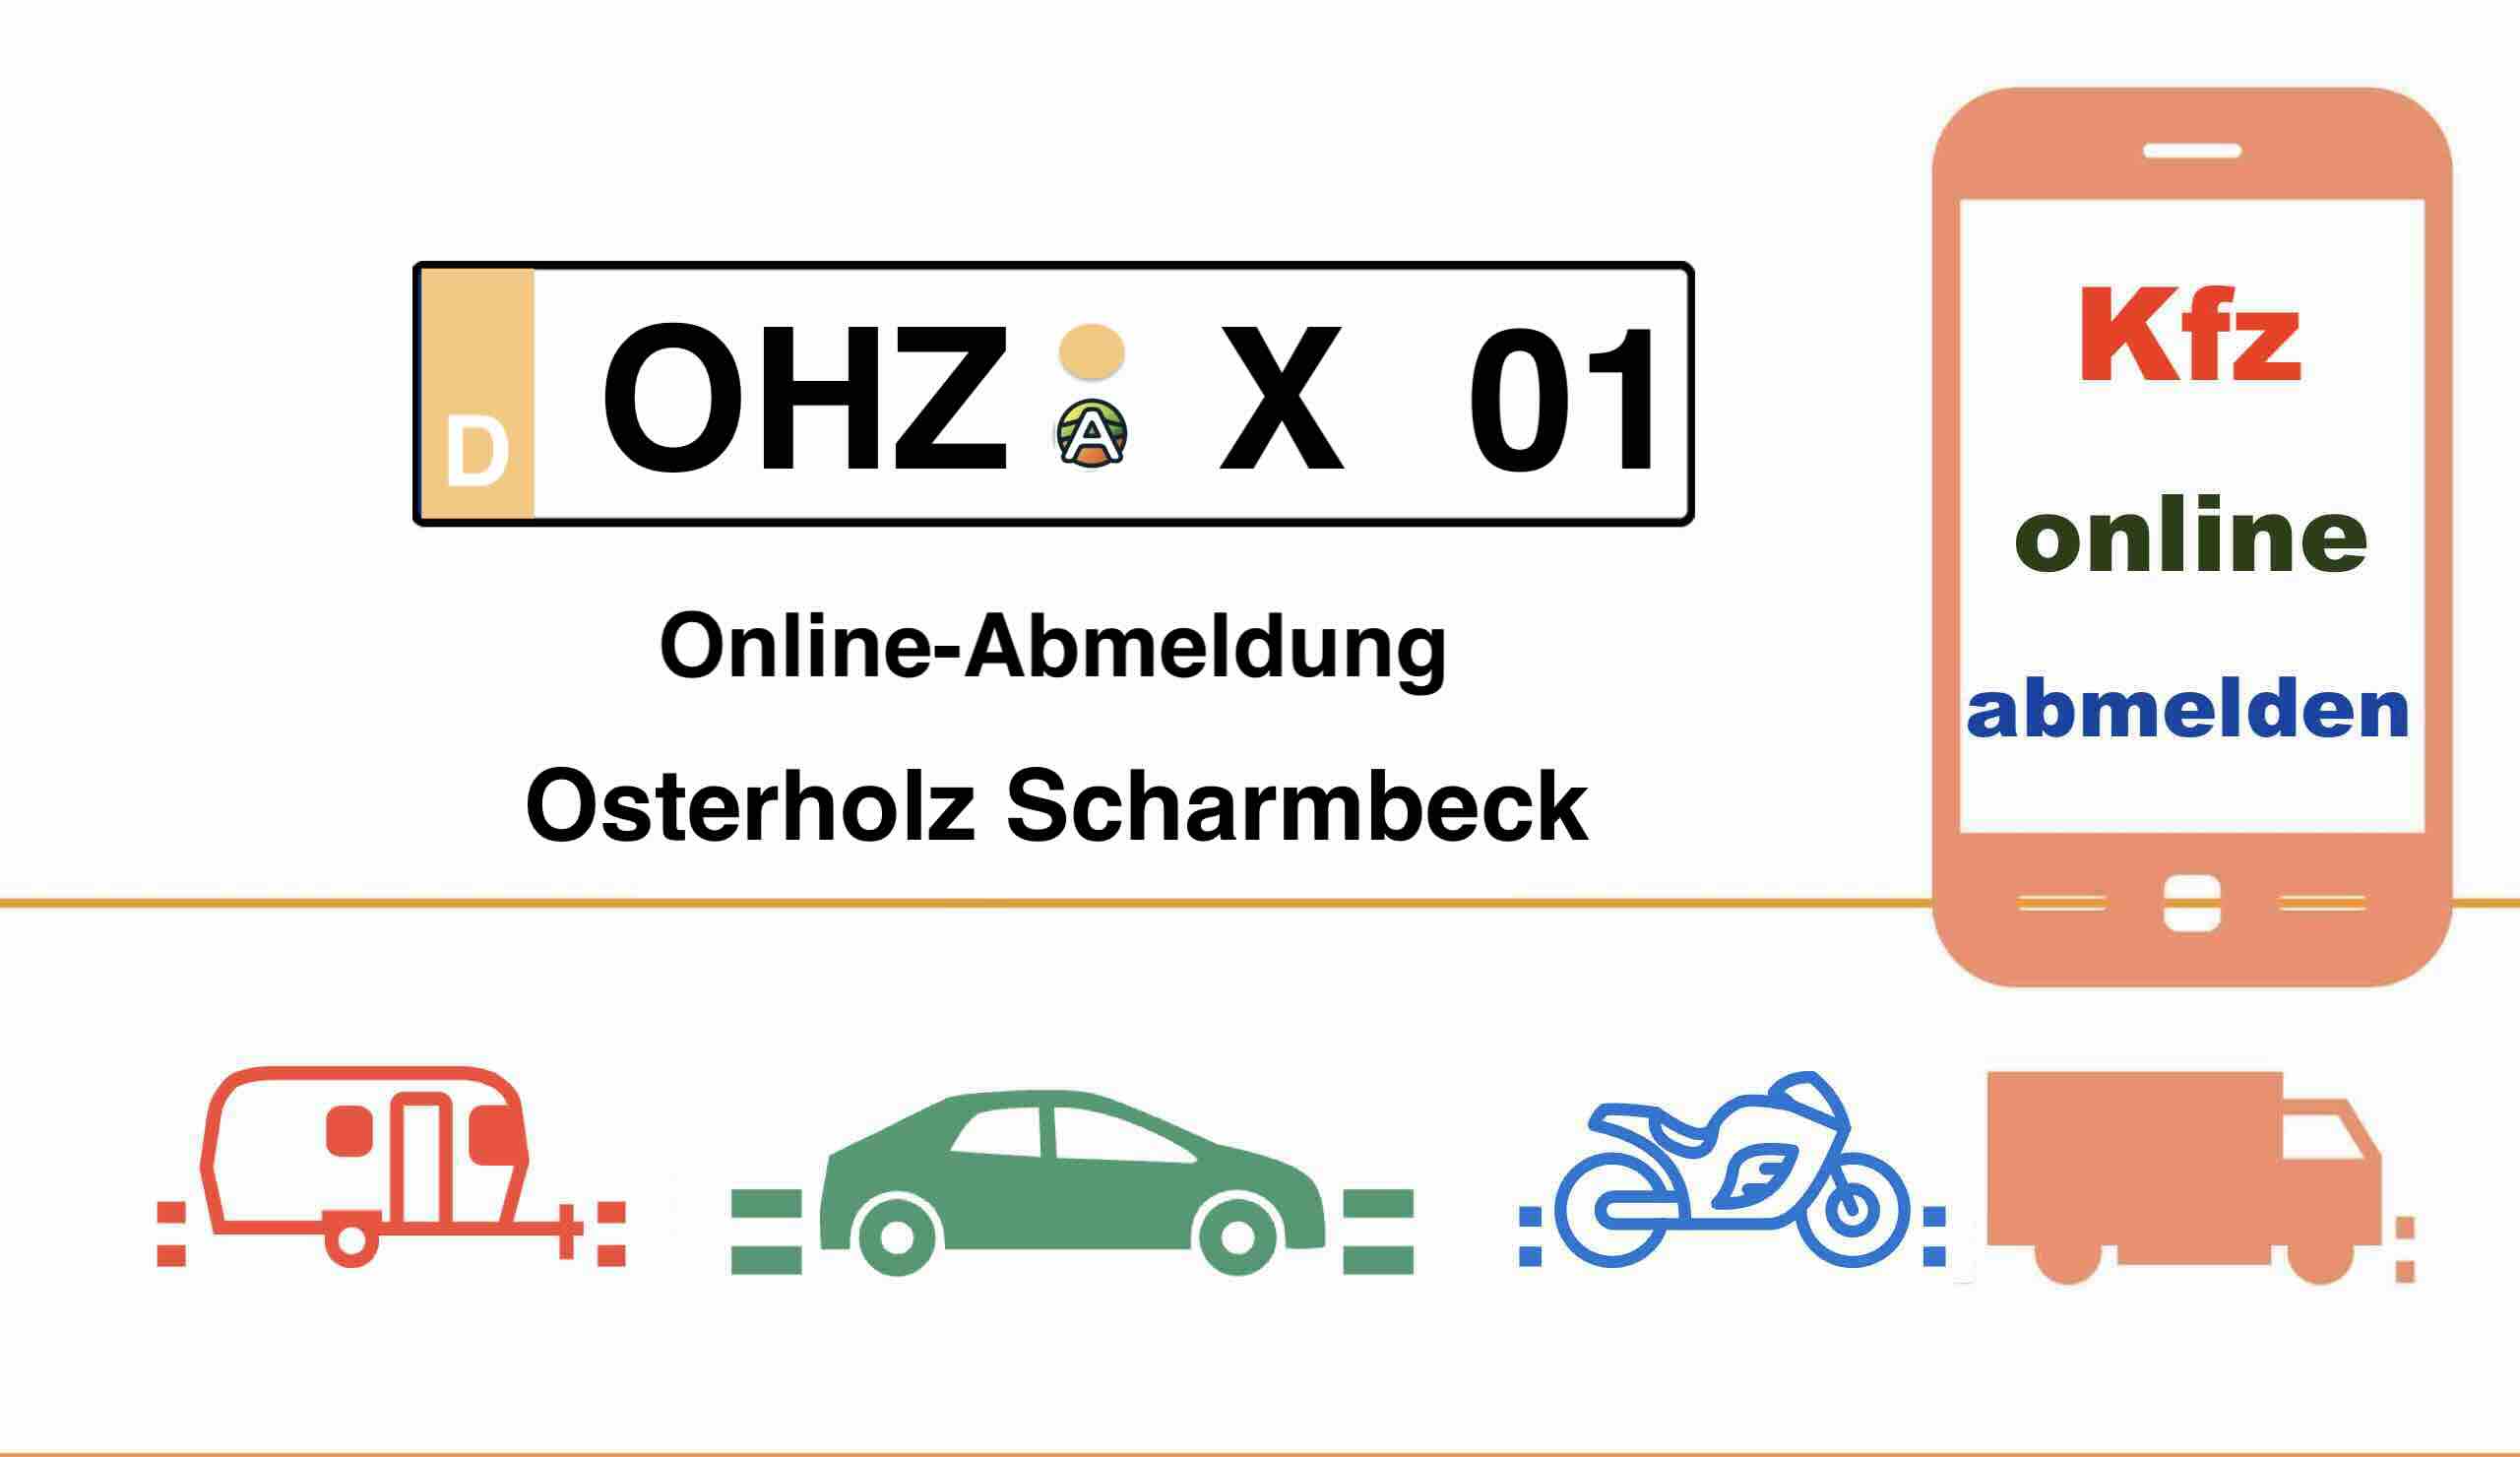 Online-Abmeldung in Osterholz Scharmbeck 